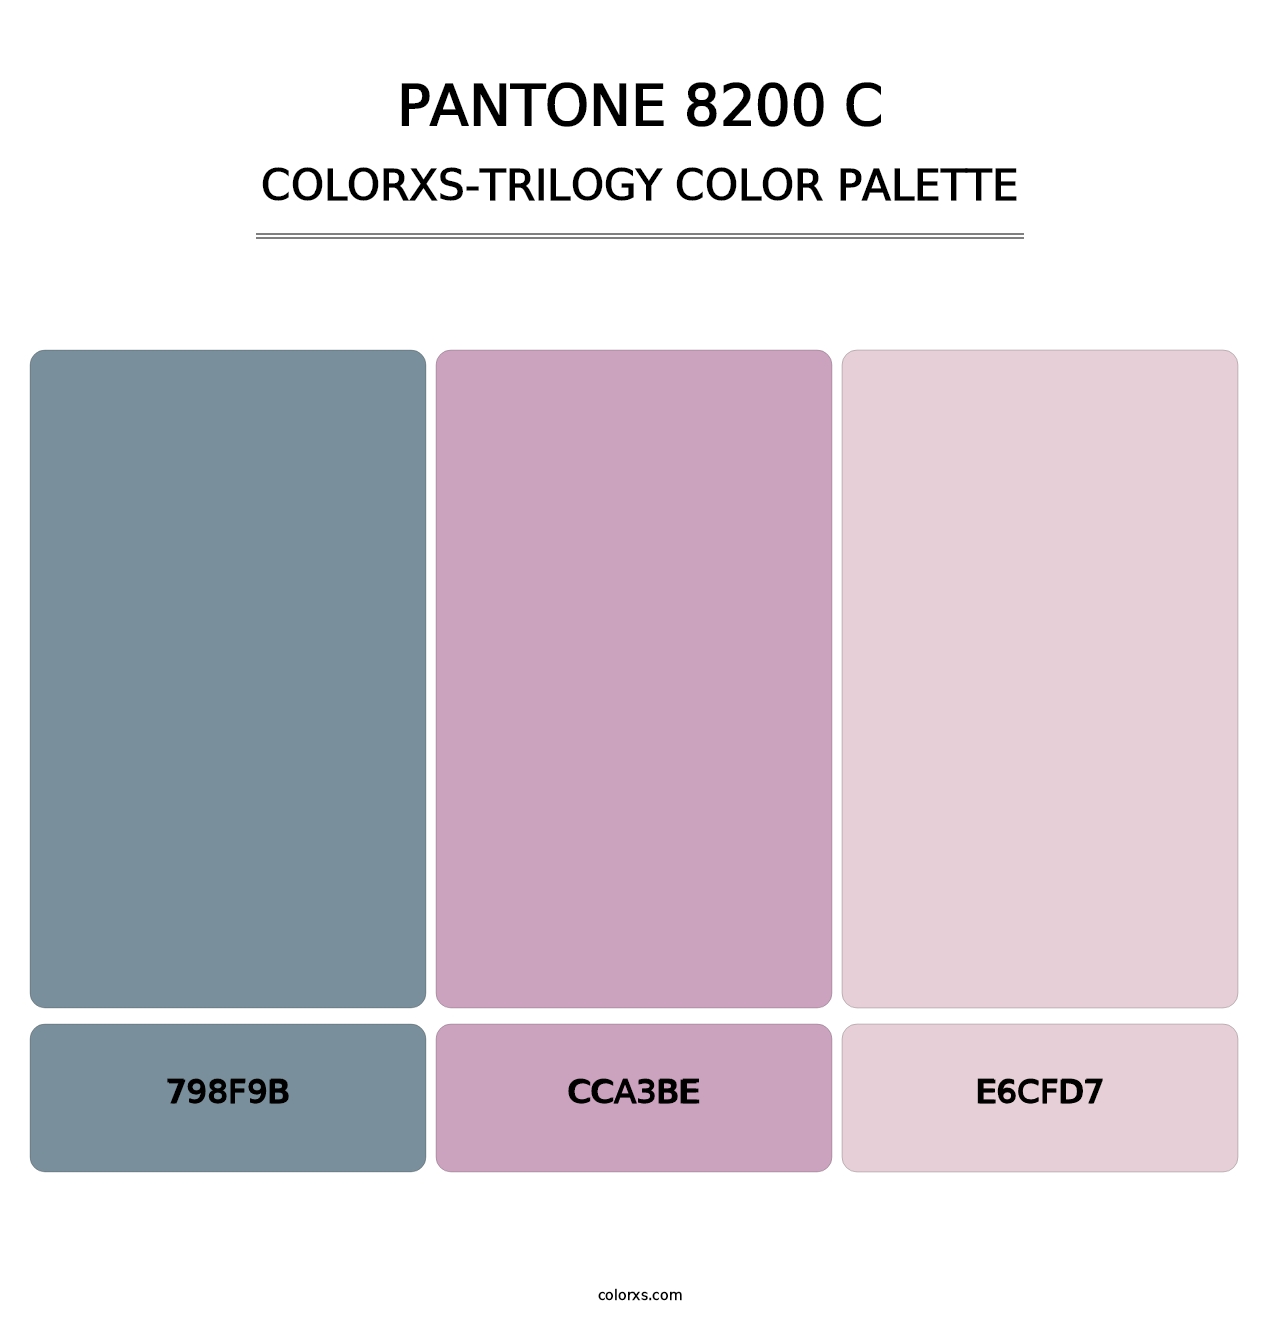 PANTONE 8200 C - Colorxs Trilogy Palette